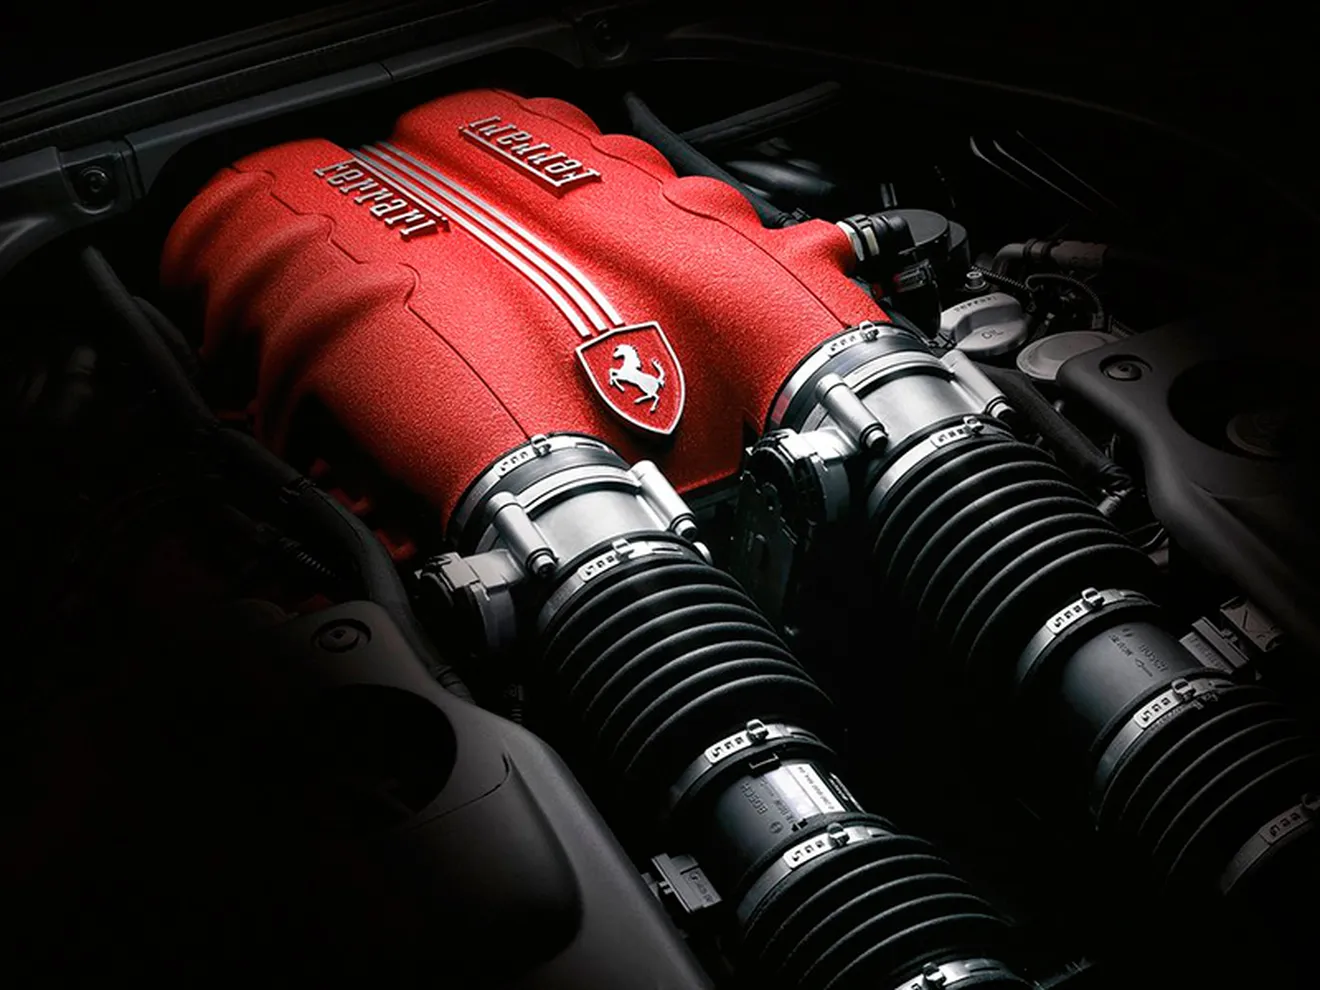 V6 Turbo, ¿el futuro acceso a la gama Ferrari?